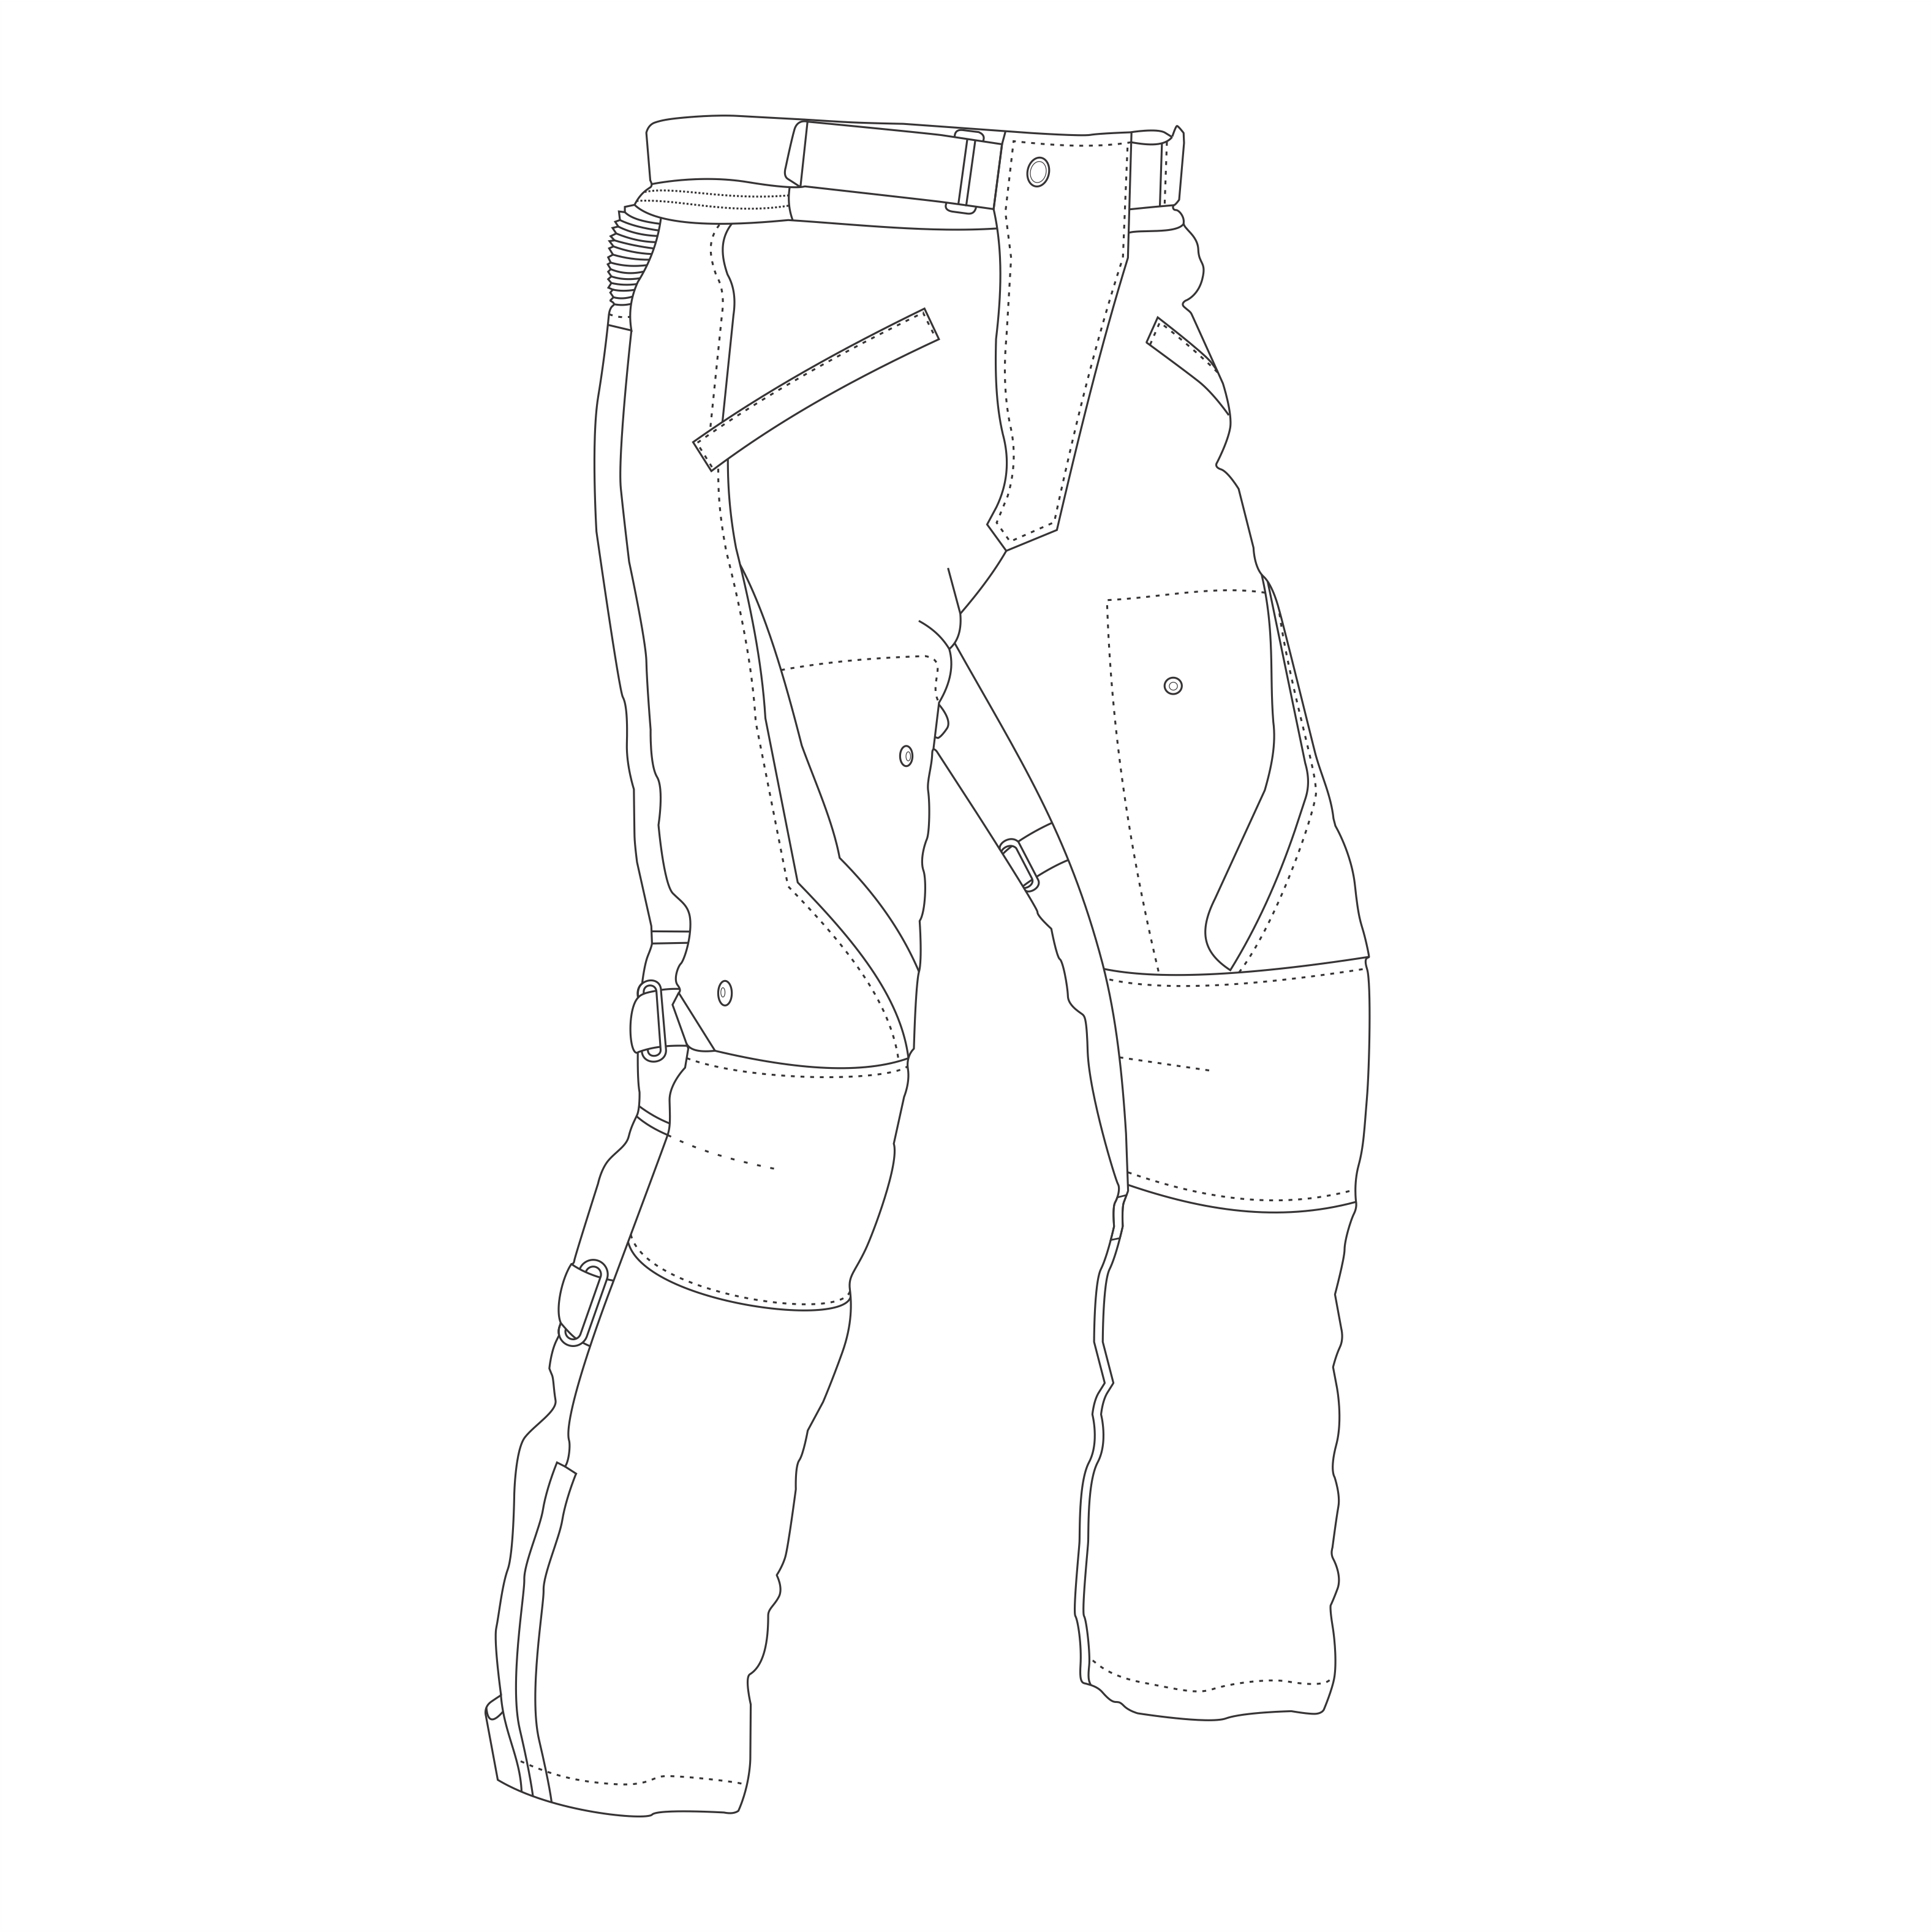 Pants – Rynox Gear